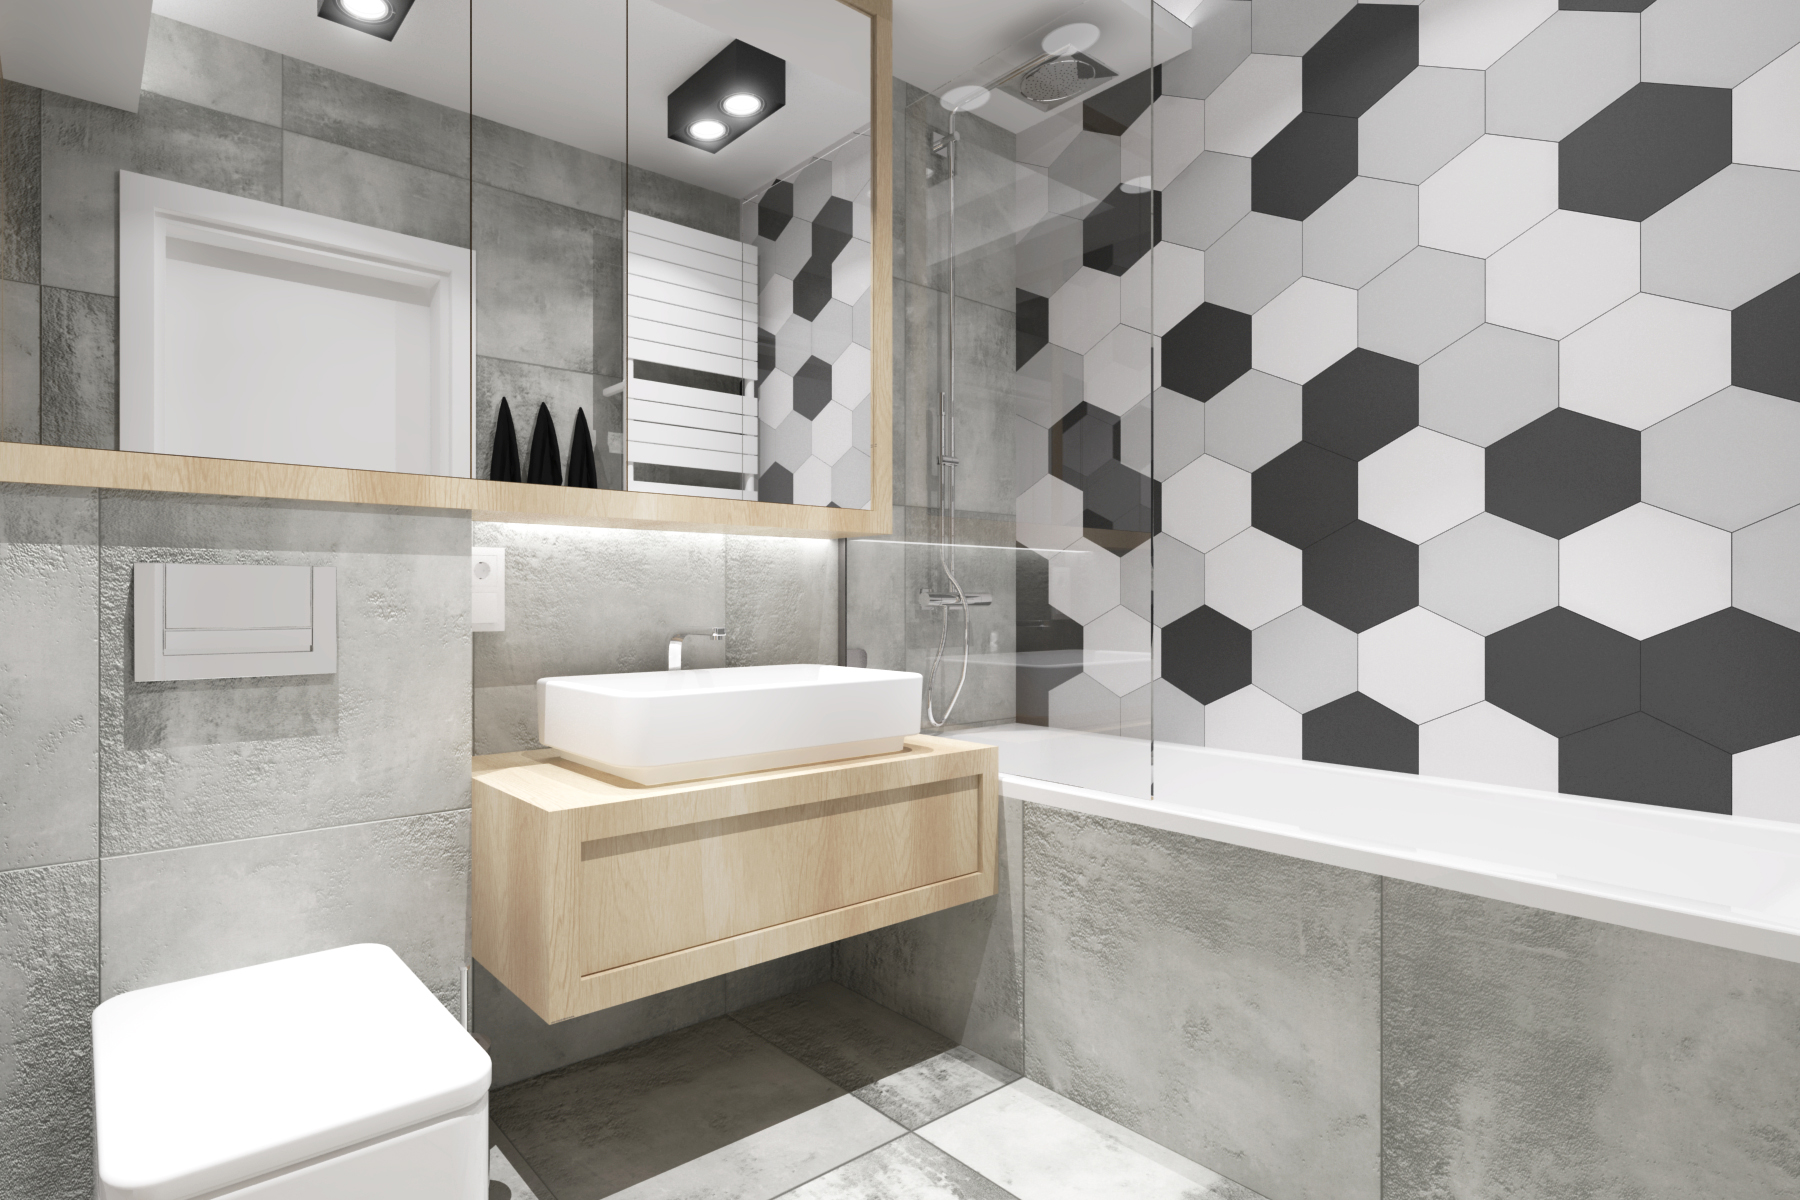 Projekty wnętrz - nowoczesna łazienka z heksagonami.